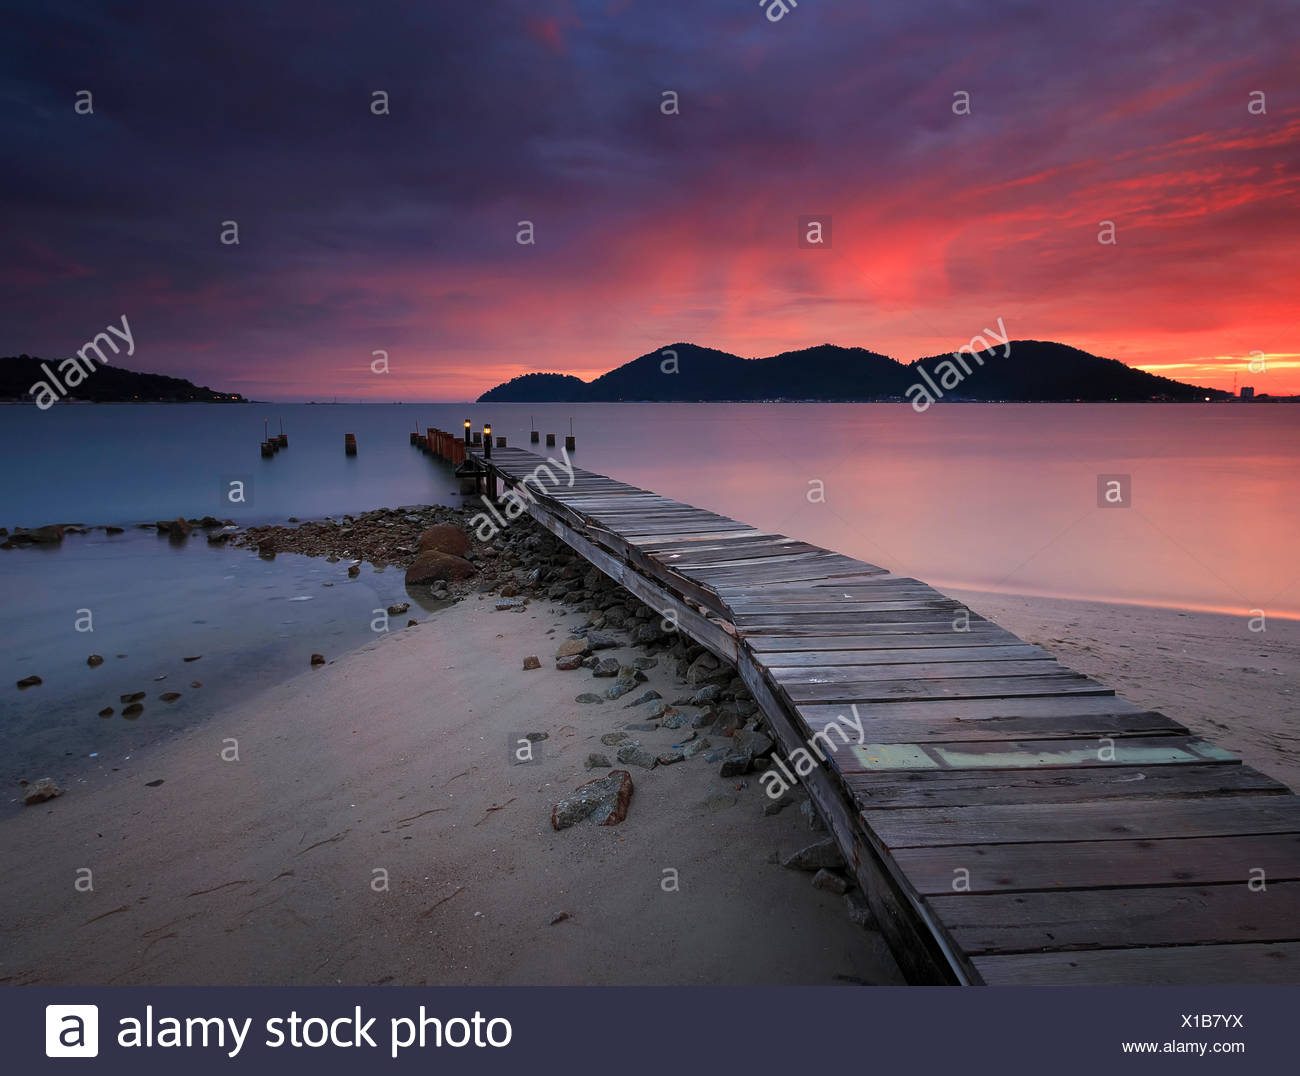 Wooden Jetty At Sunset Marina Island Lumut Perak Malaysia Stock Photo Alamy